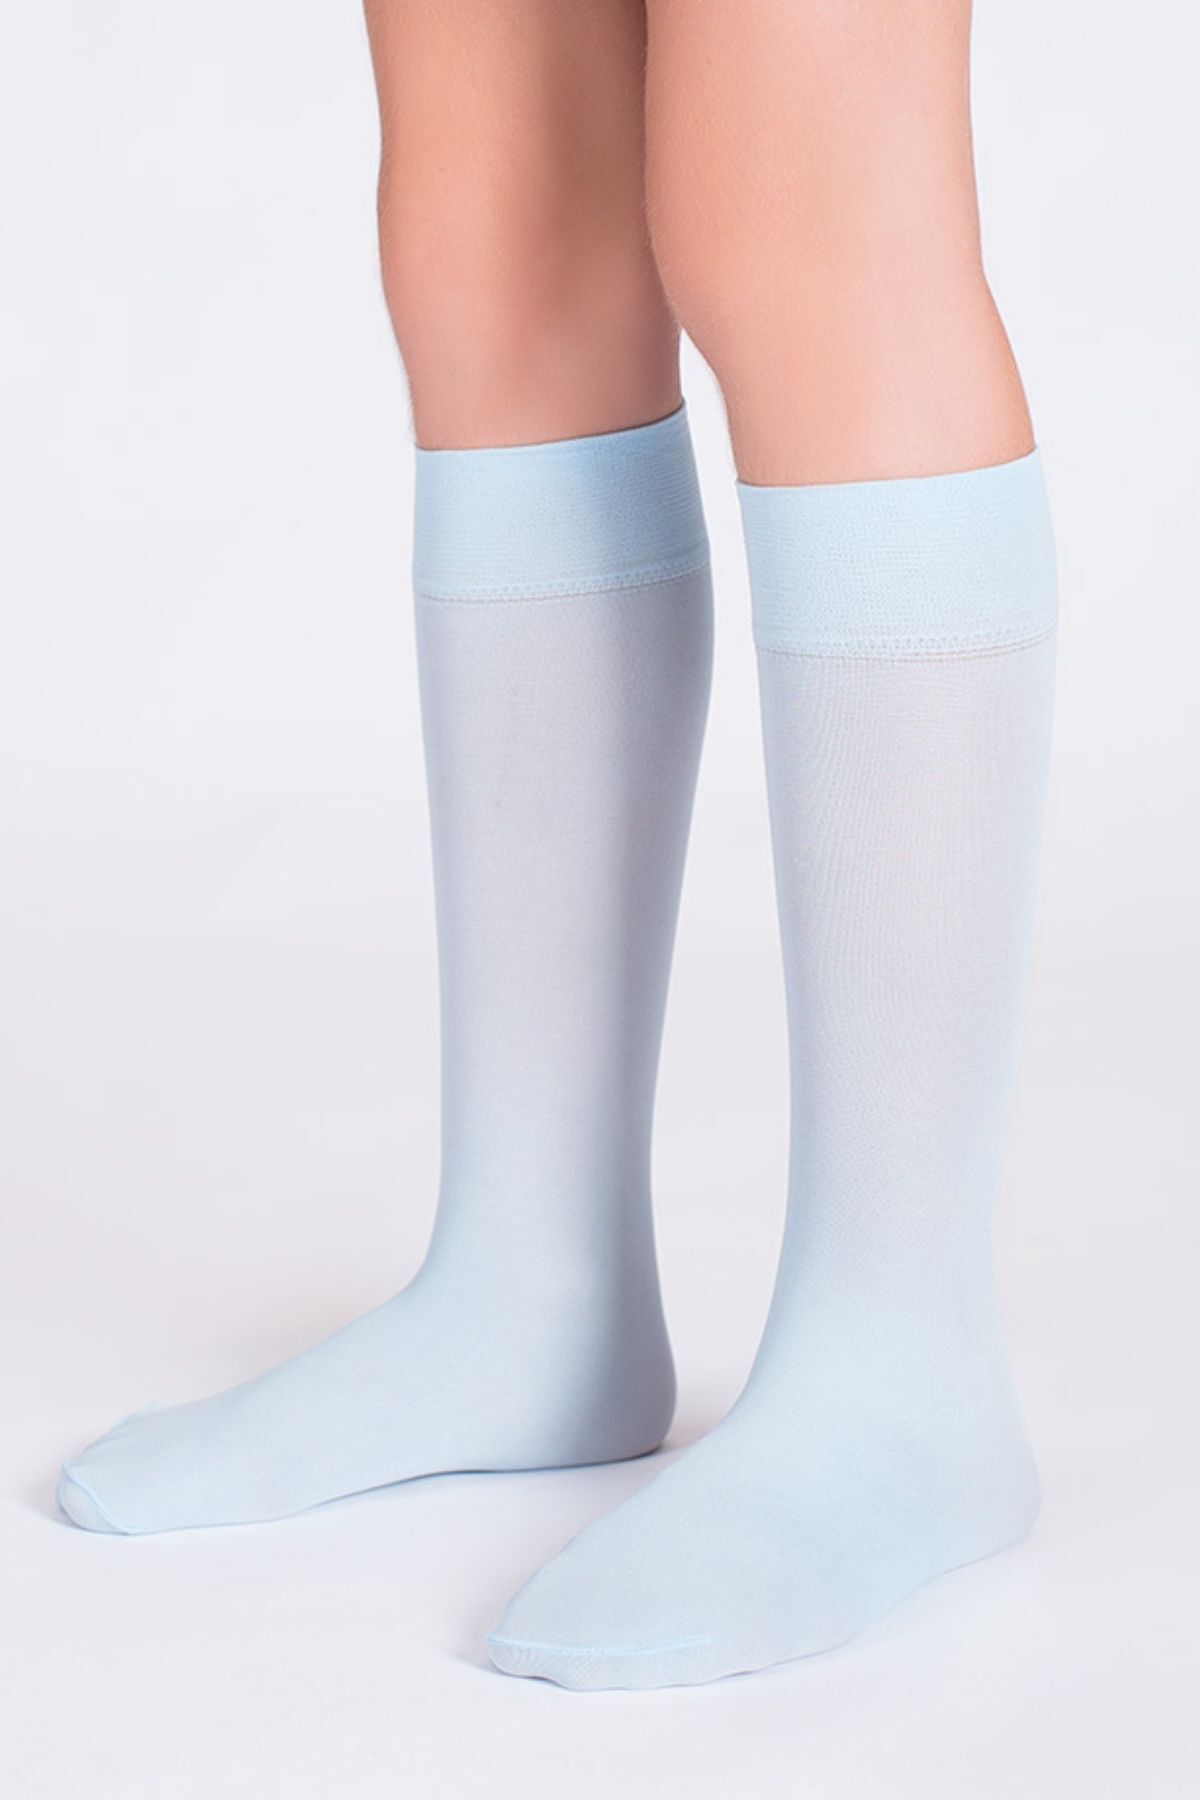 Goose Diz Altı Mavi Kız Çocuk Çorap